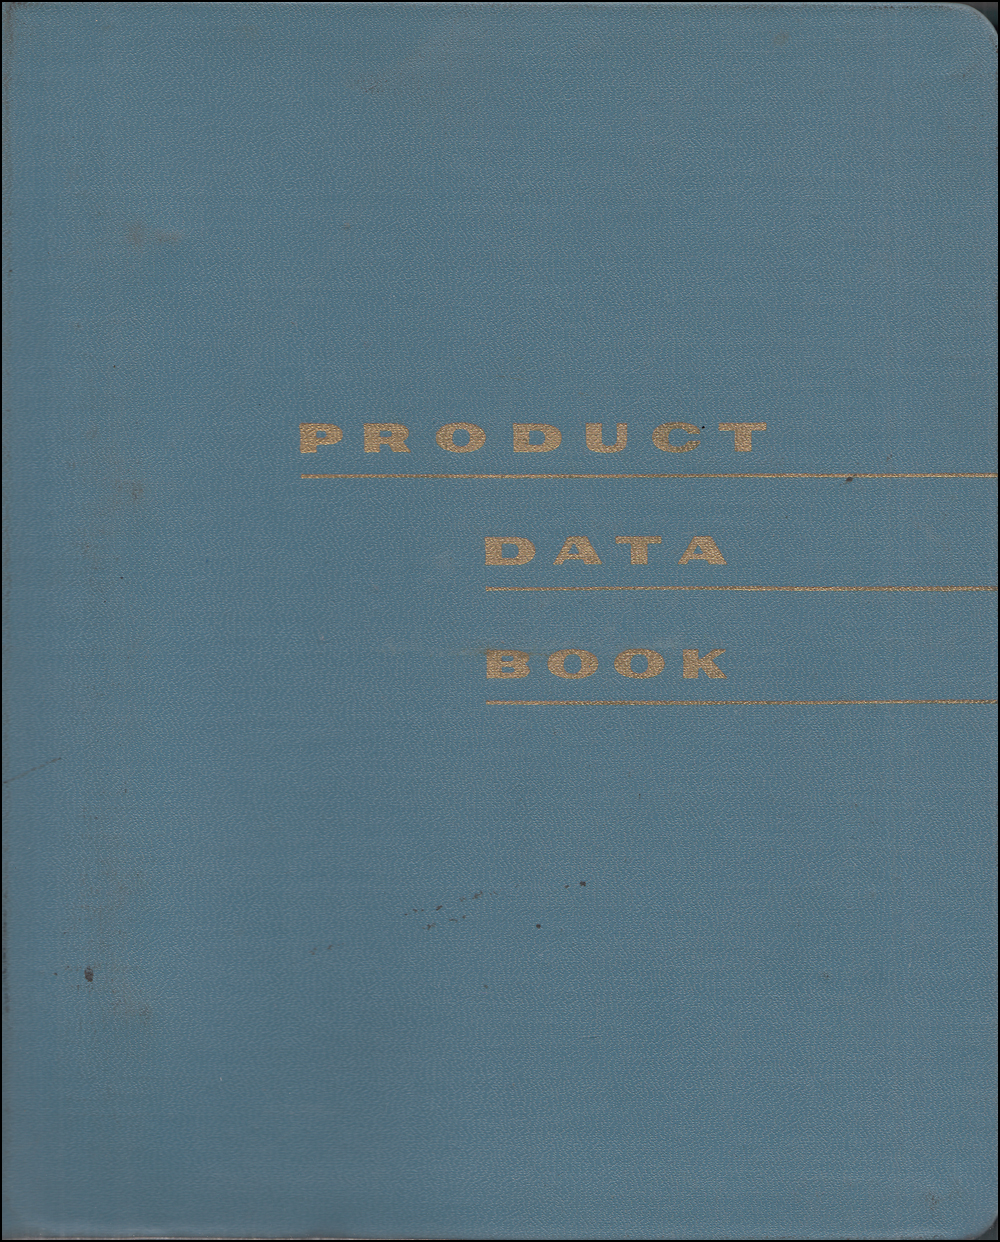 1962 Lincoln Continental Data Book Original